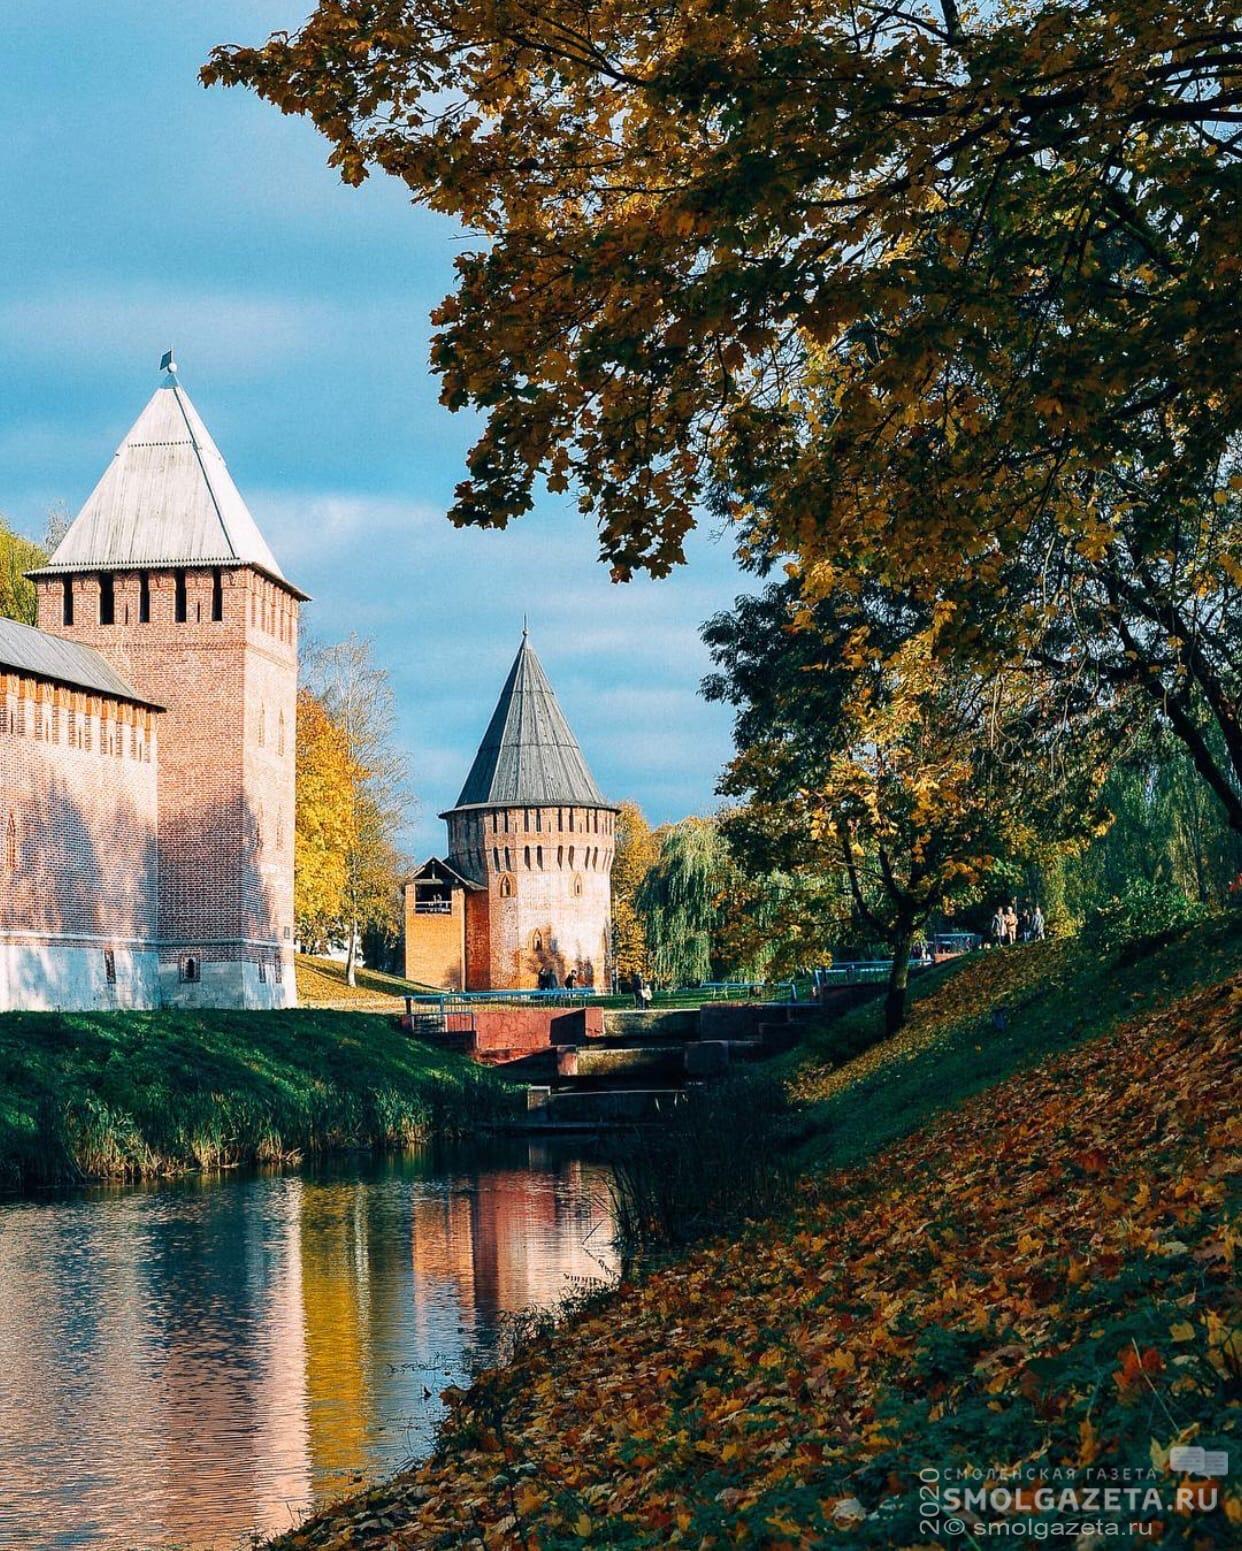 Смоленск продолжает лидировать в рейтинге лучших городов России